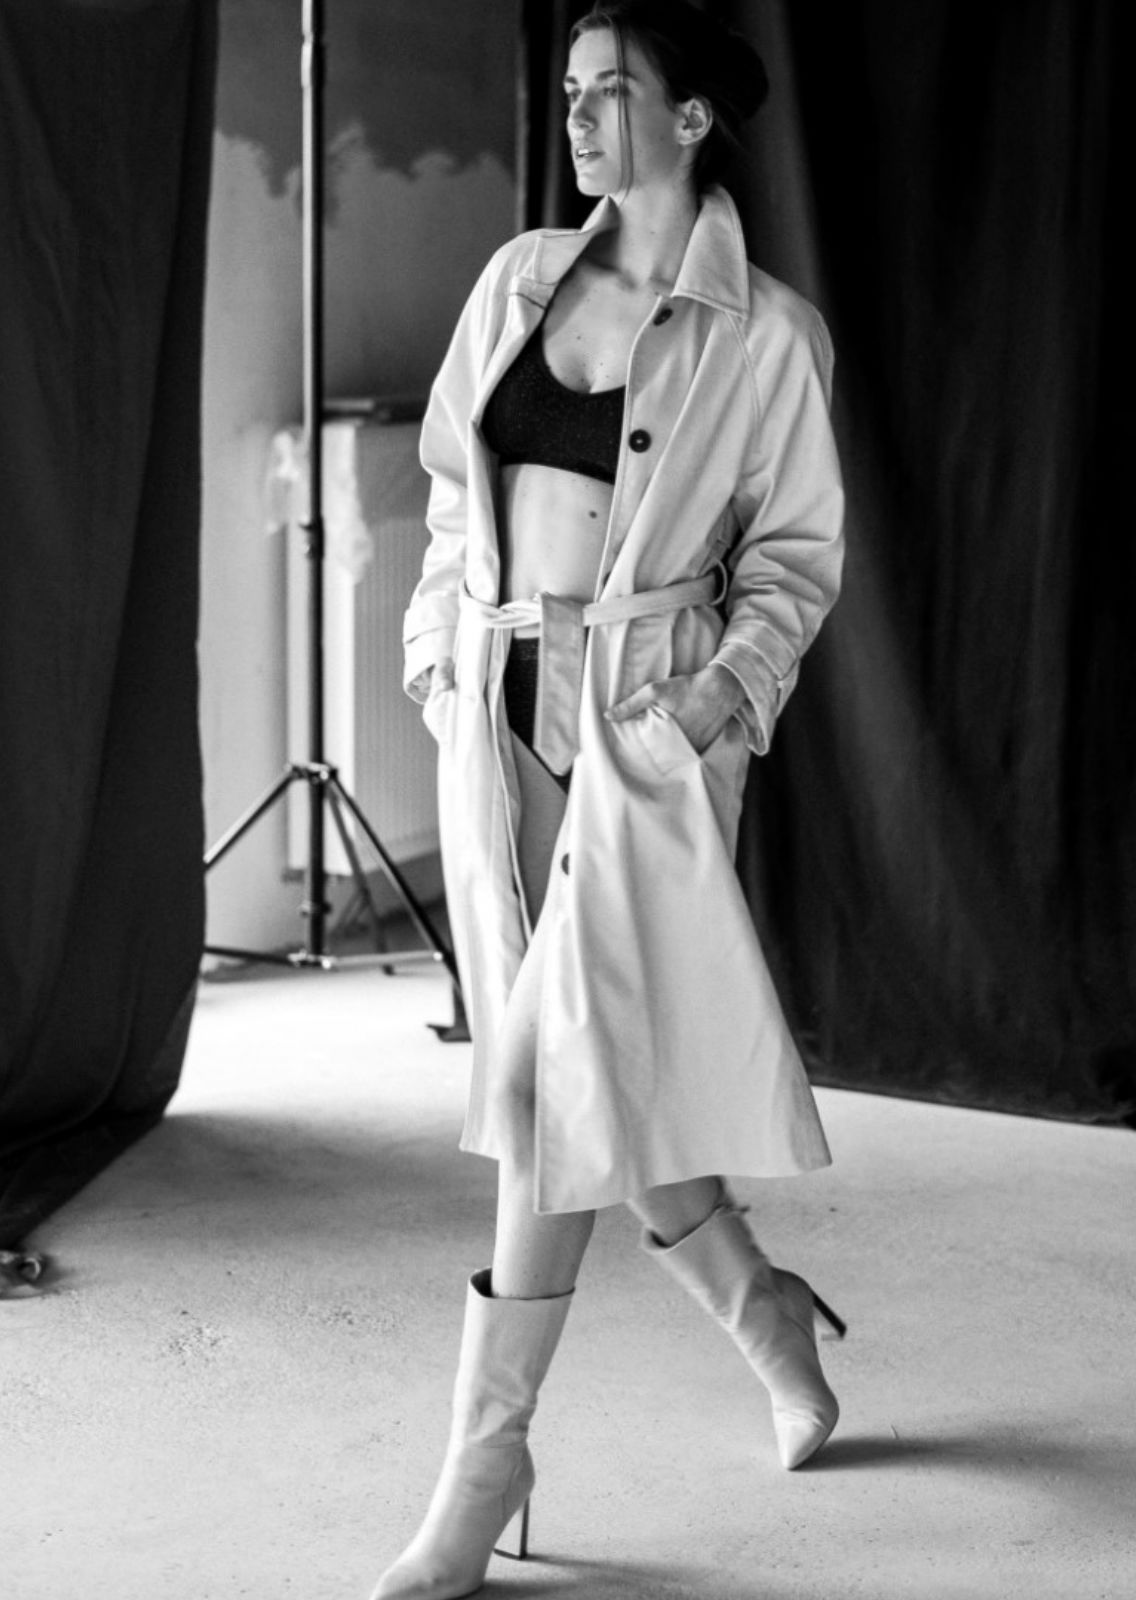 ALINA HILLER. Carmen Duran Model Agency.